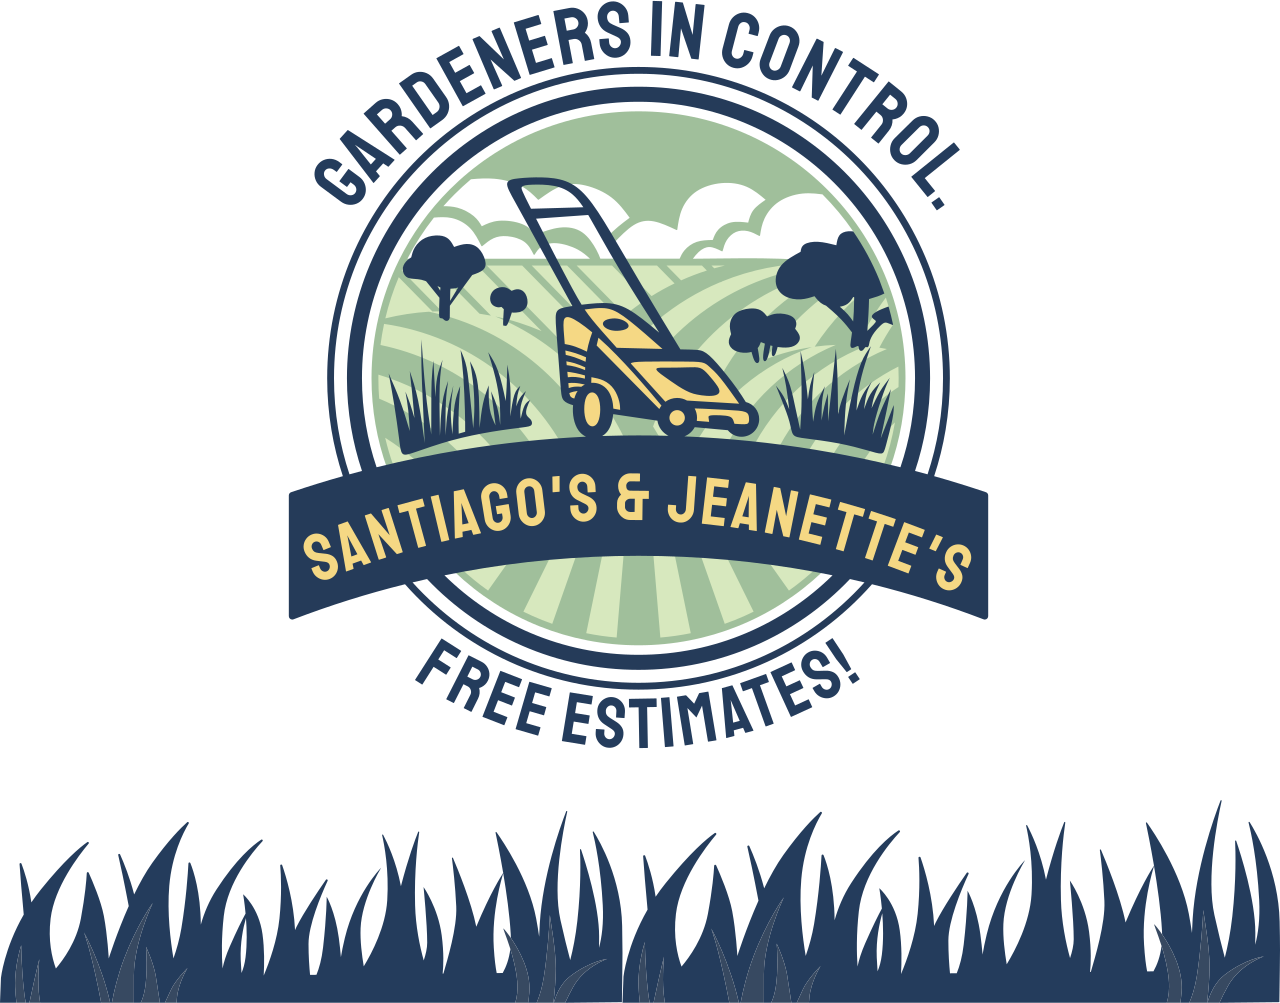 Santiago's & Jeanette's's logo